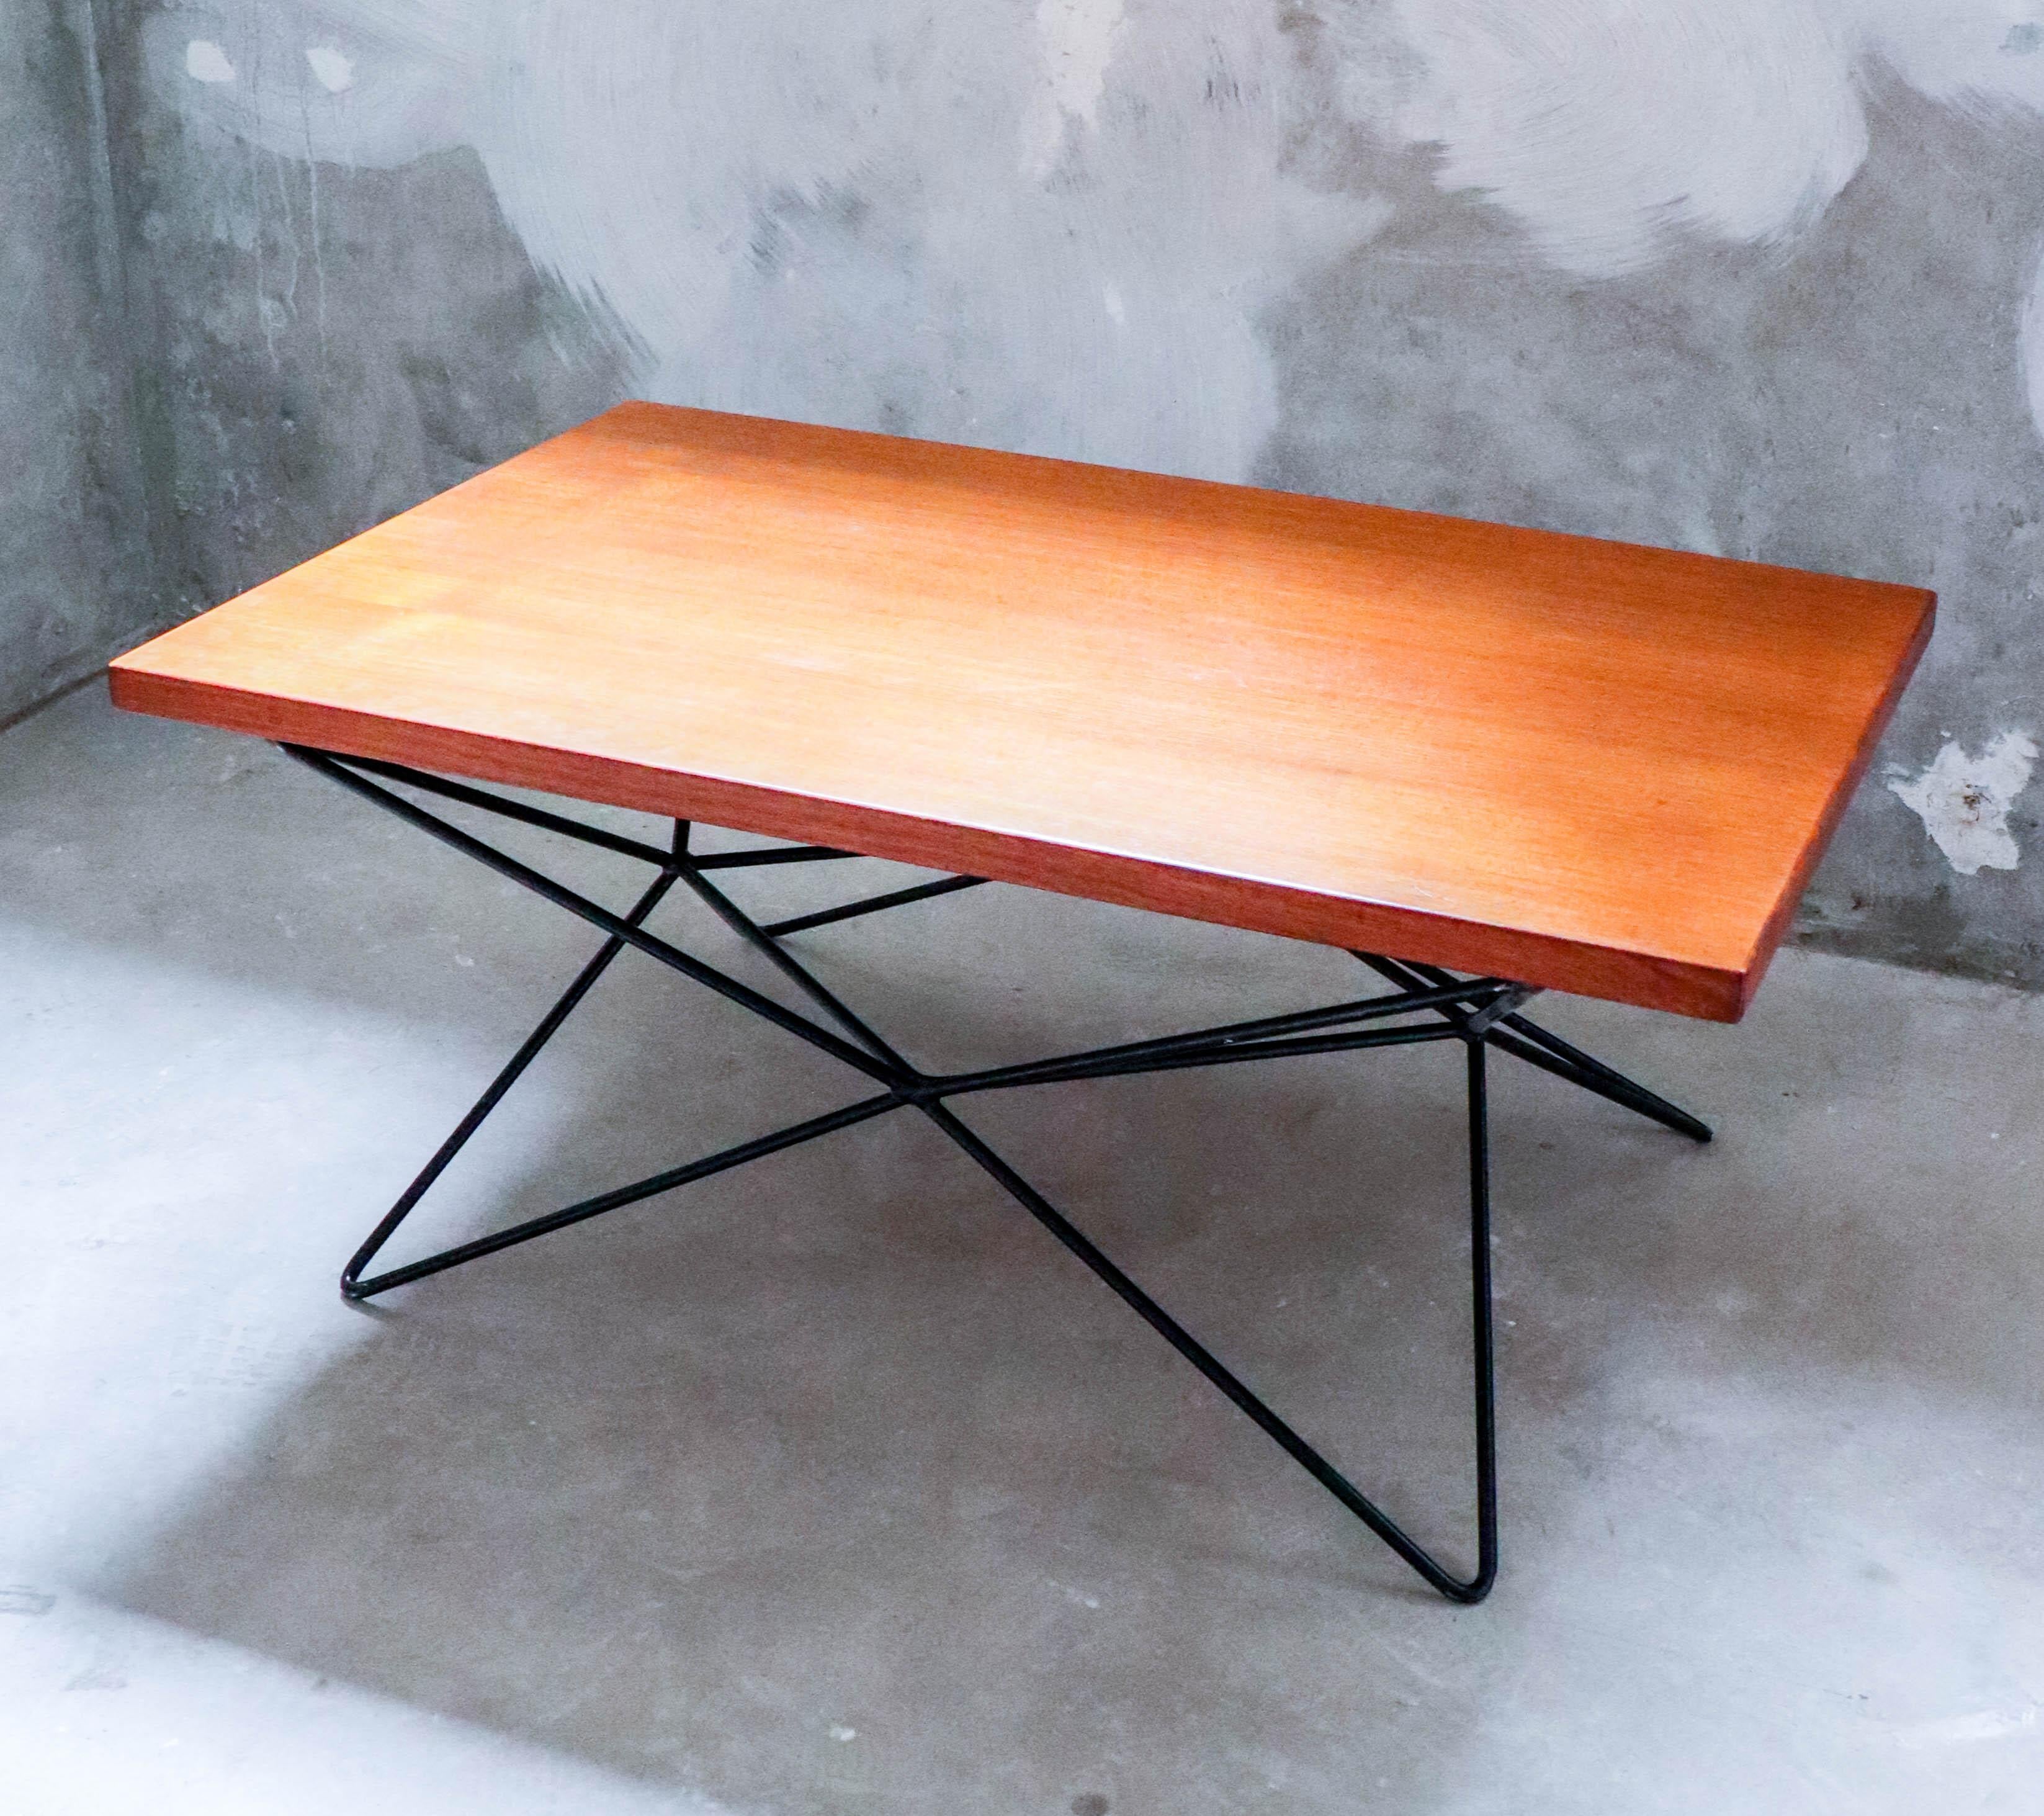 Une magnifique table A2 conçue par l'architecte et designer suédois Bengt-Johan Gullberg. La table a été conçue pour être à la fois une table basse, une table à dîner et une table de cocktail ou d'appoint, selon la façon dont vous retournez la base.